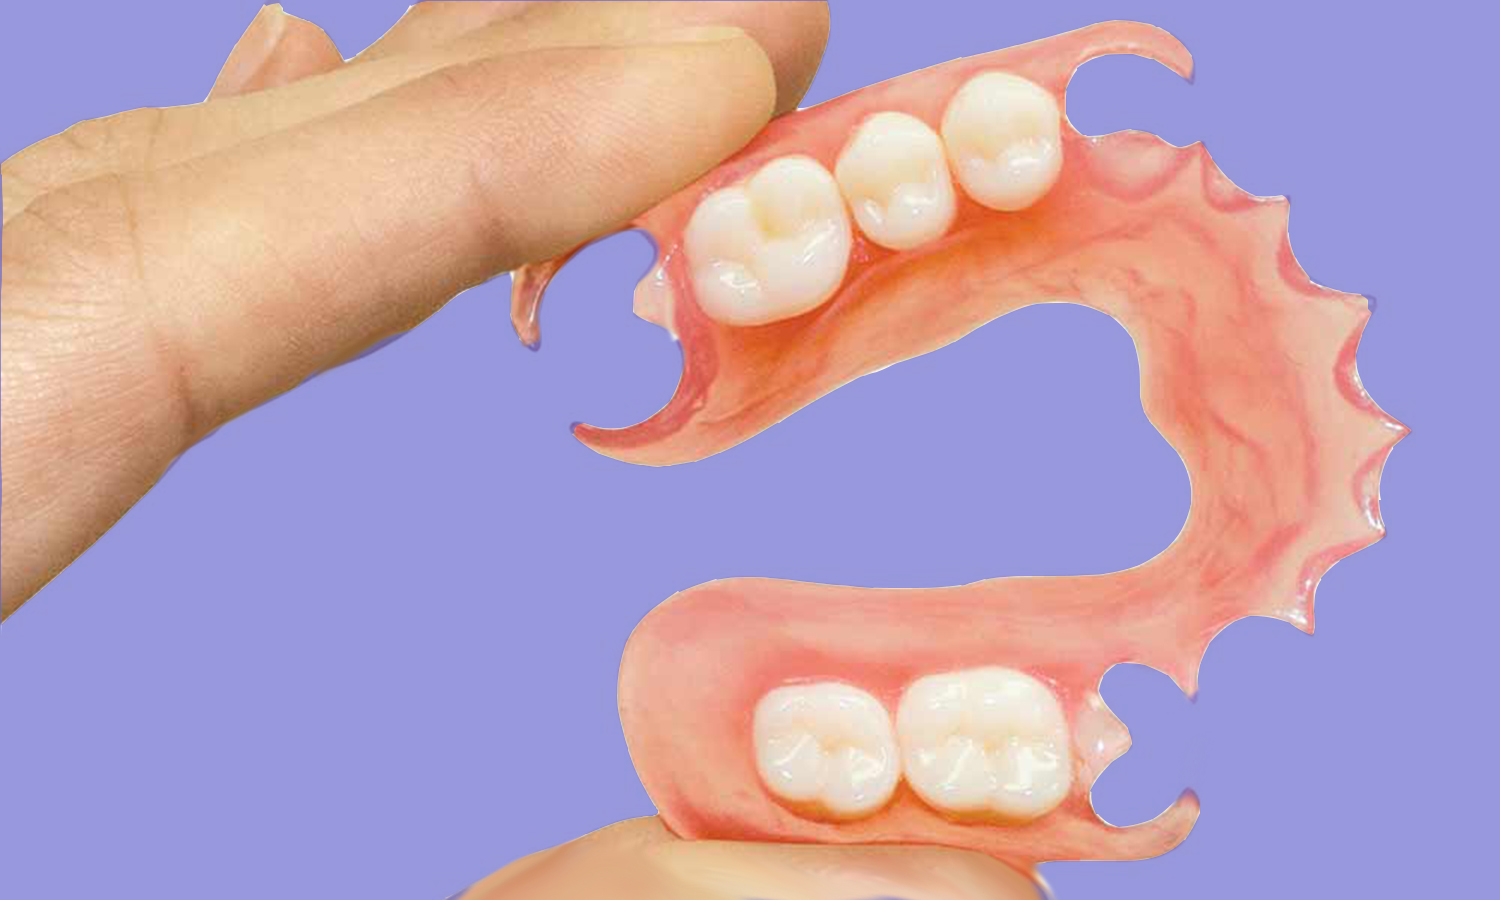 Prótese dentária flexível durabilidade, prós e contras.